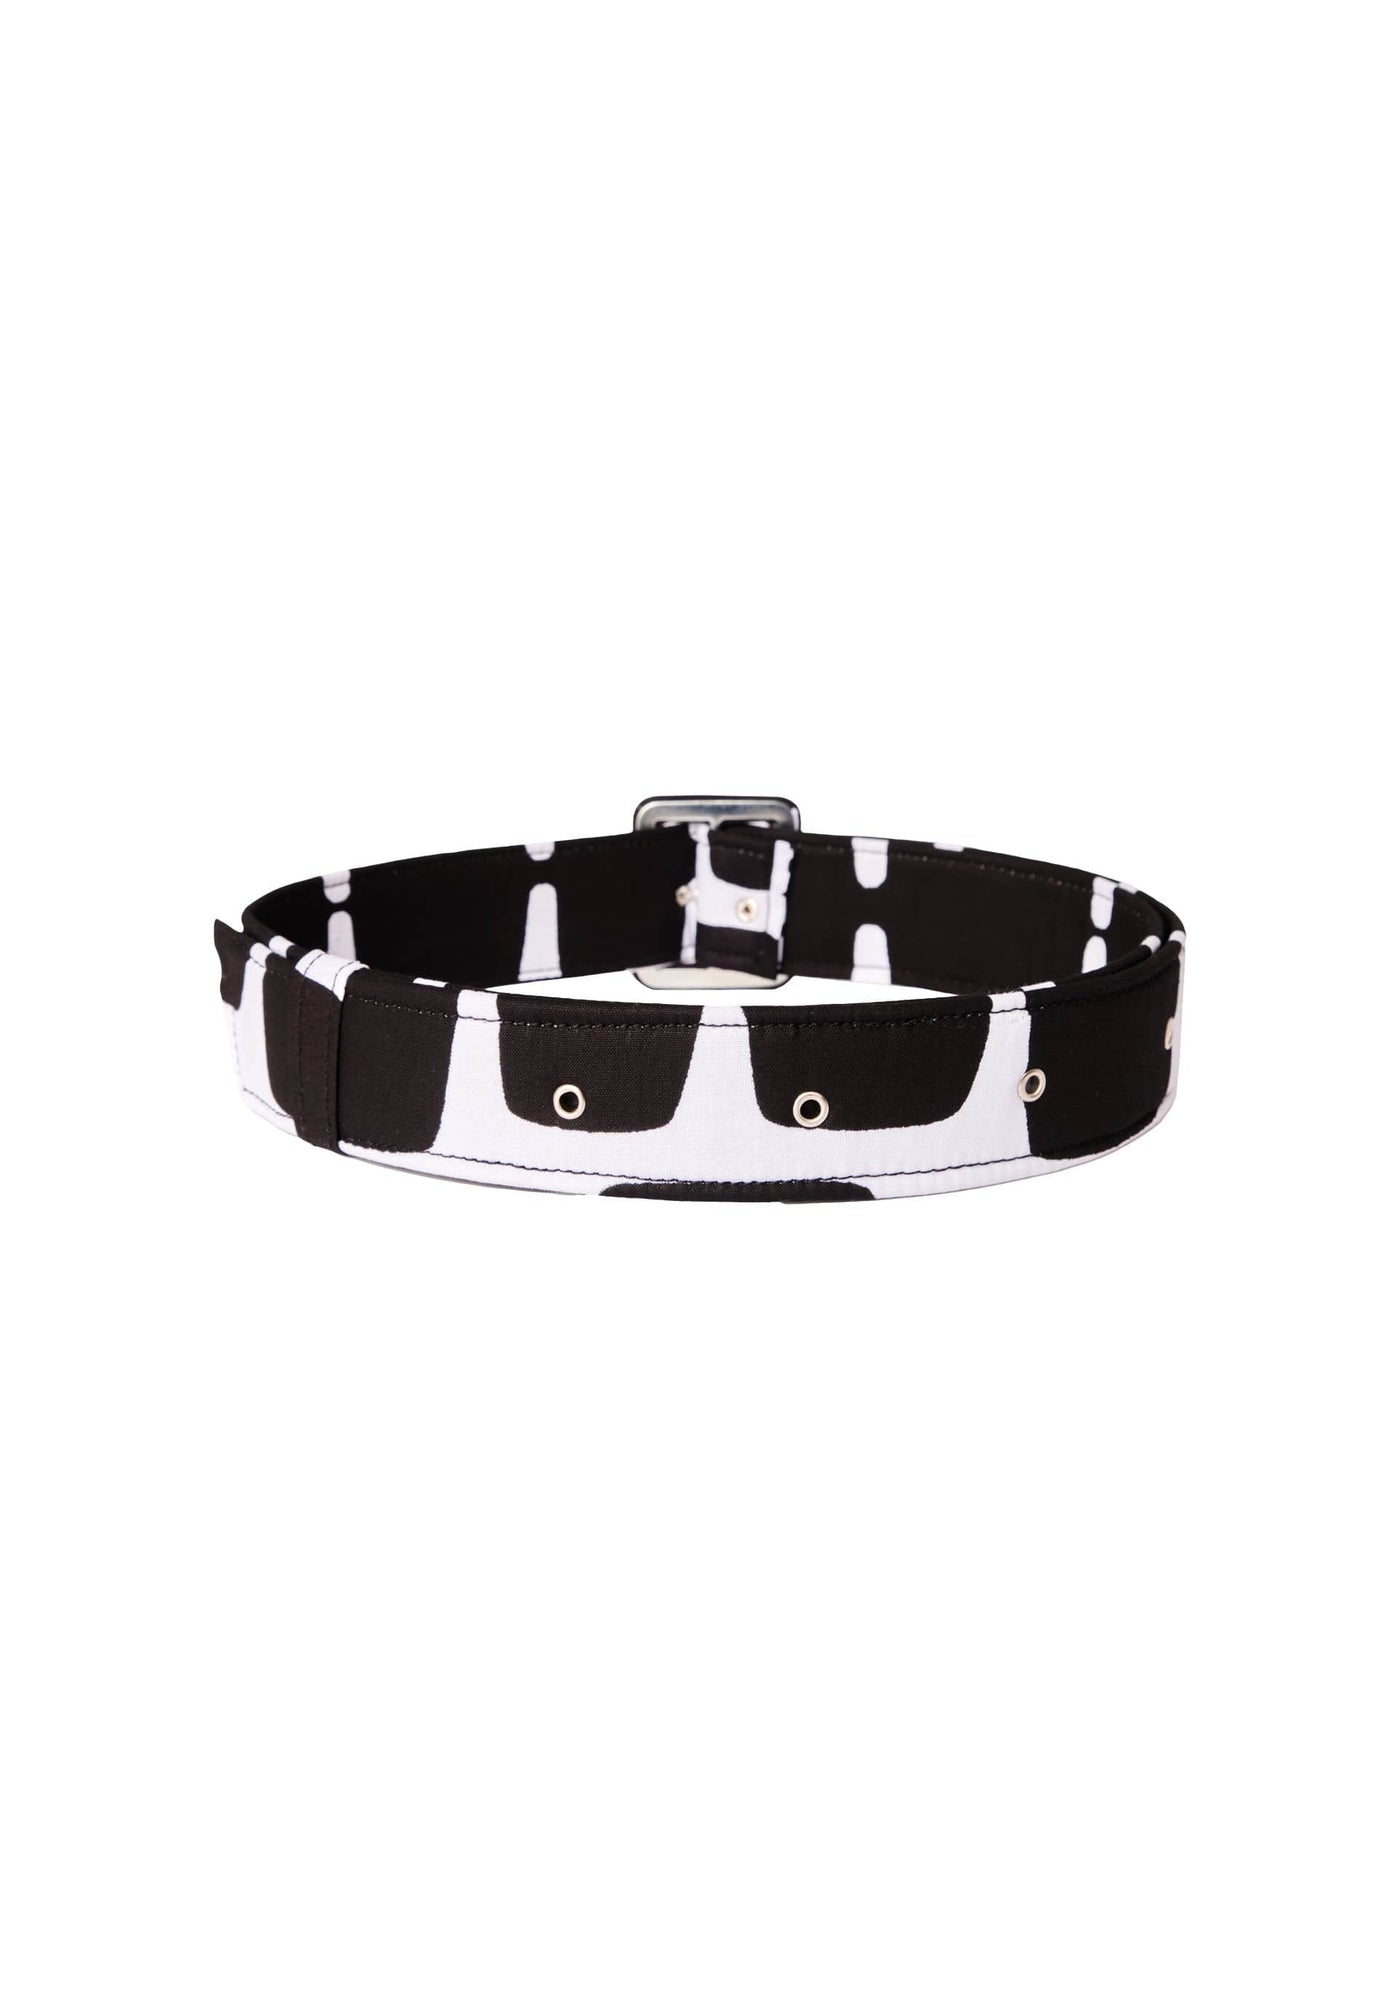 YEVU Accessories - Belts Standard Belt - Lucky Charm